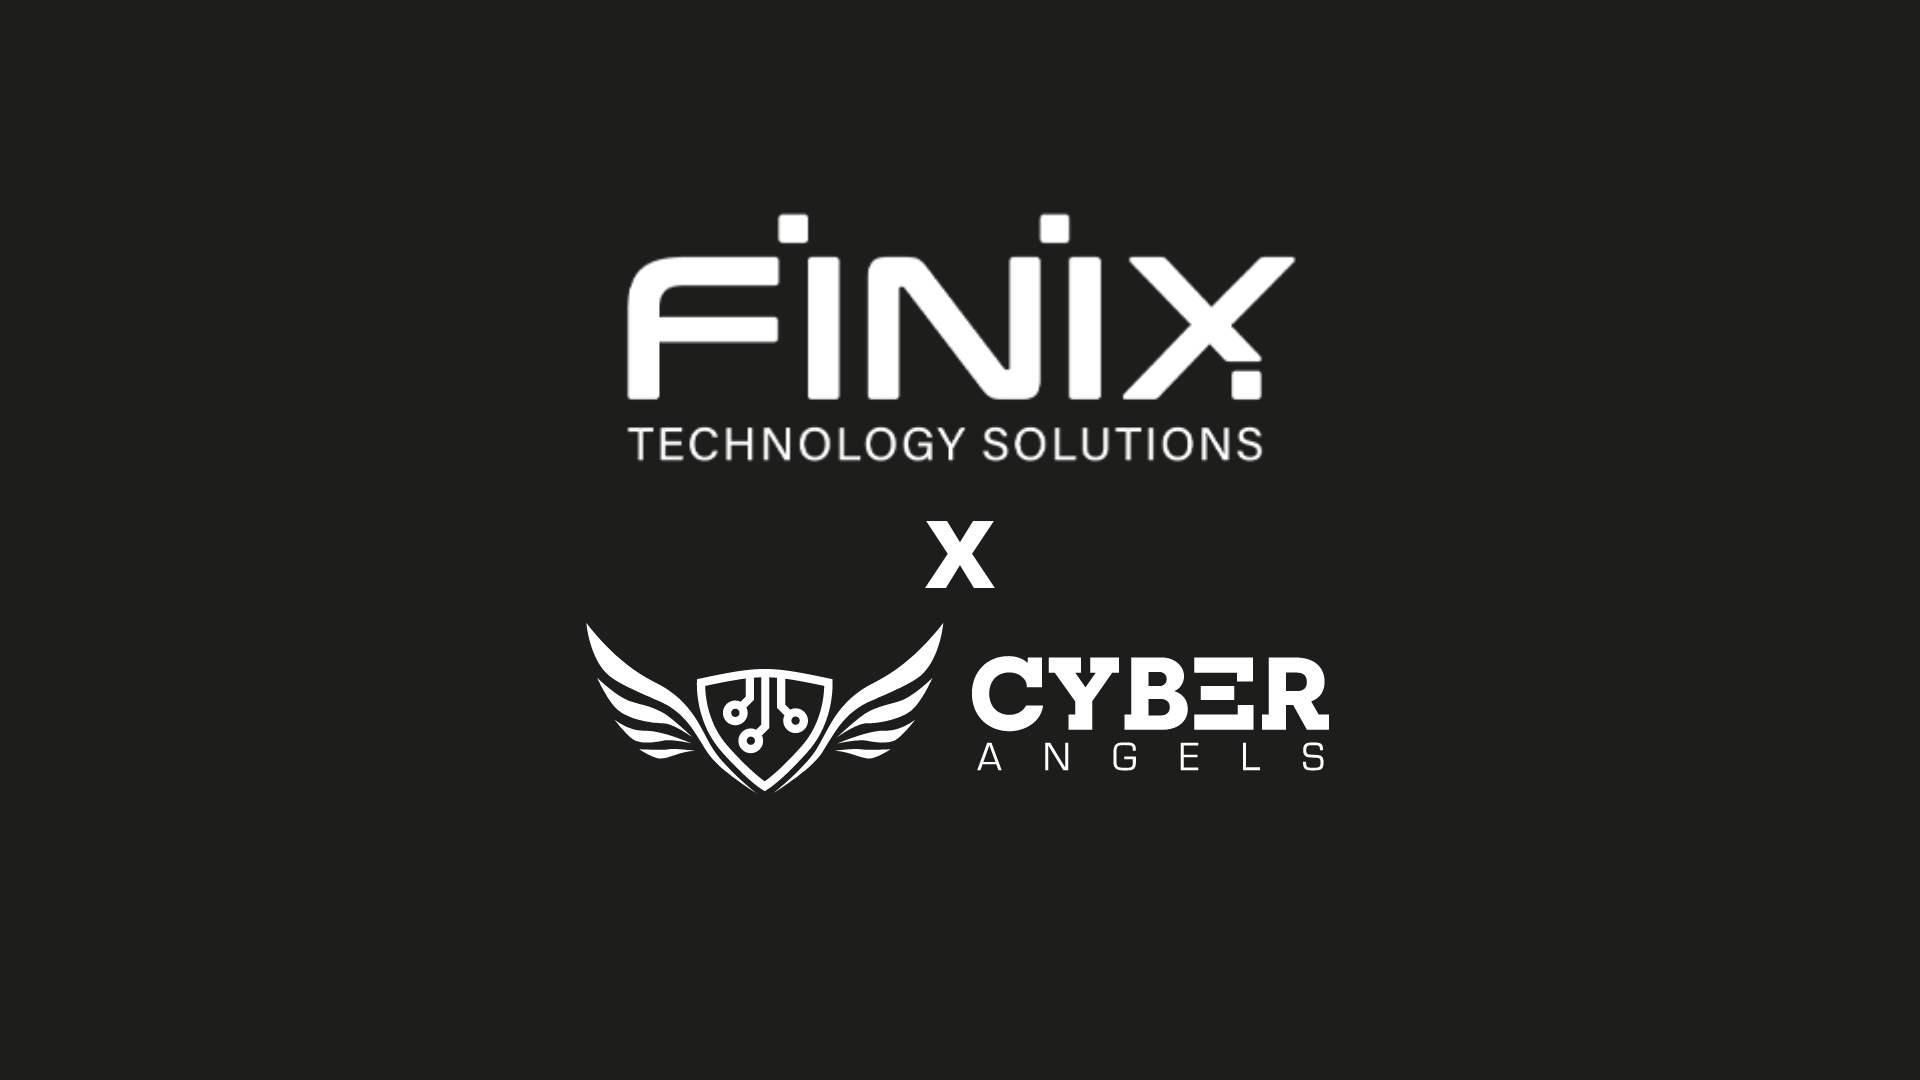 Finix Technology Solutions e Cyberangels uniscono le forze per la sicurezza informatica dei clienti